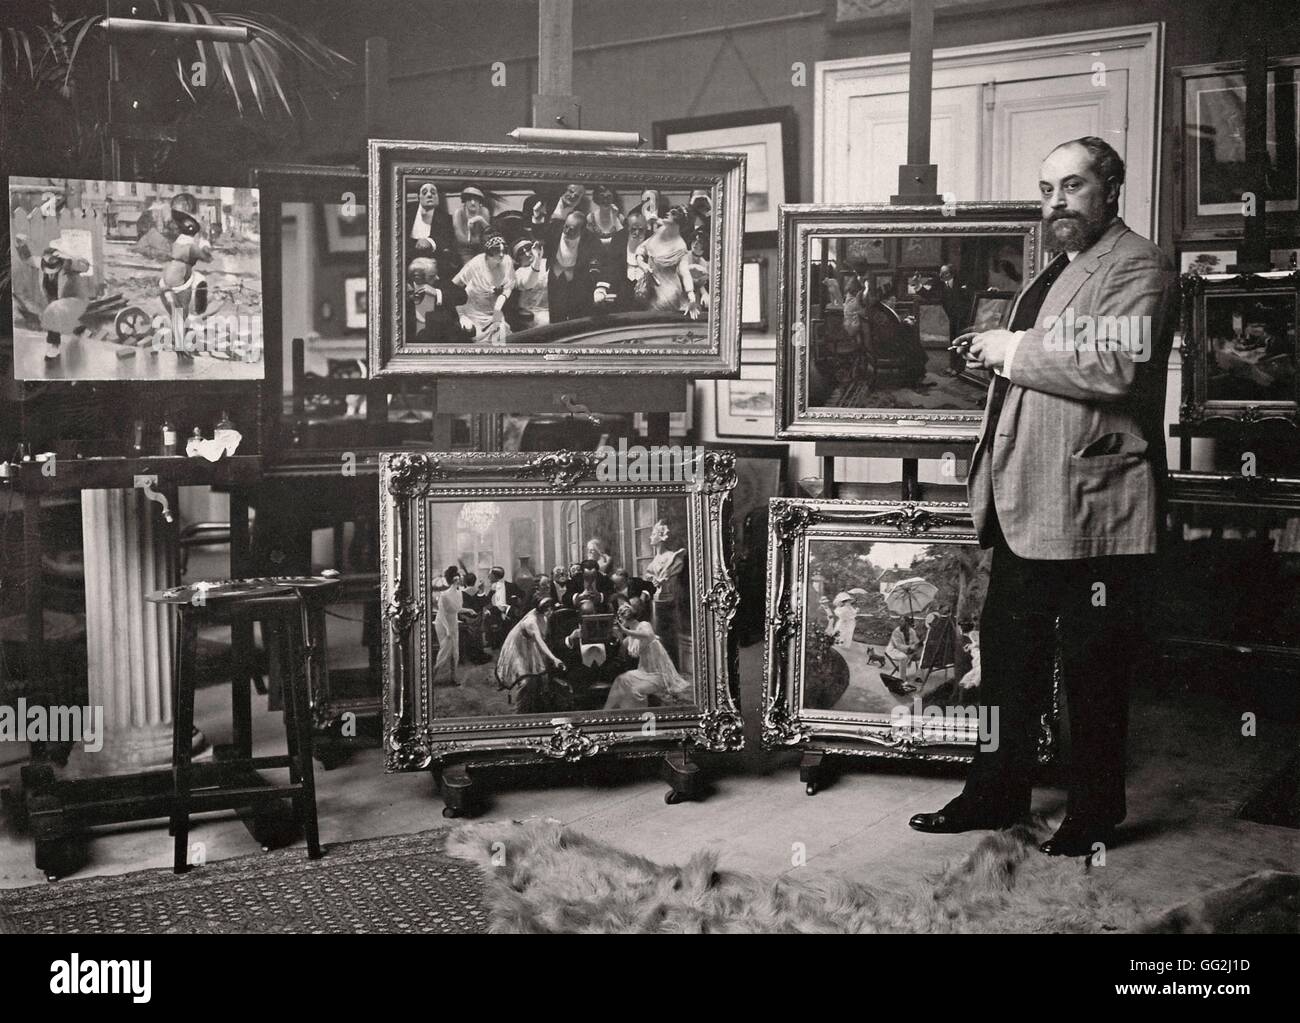 Französischer Maler und Karikaturist Albert Guillaume in seinem Atelier in Paris. Er posiert vor seiner berühmten Werke: "Nachzügler (oben in der Mitte) und"The Lie"(oben rechts). Albumen print c.1914 Stockfoto